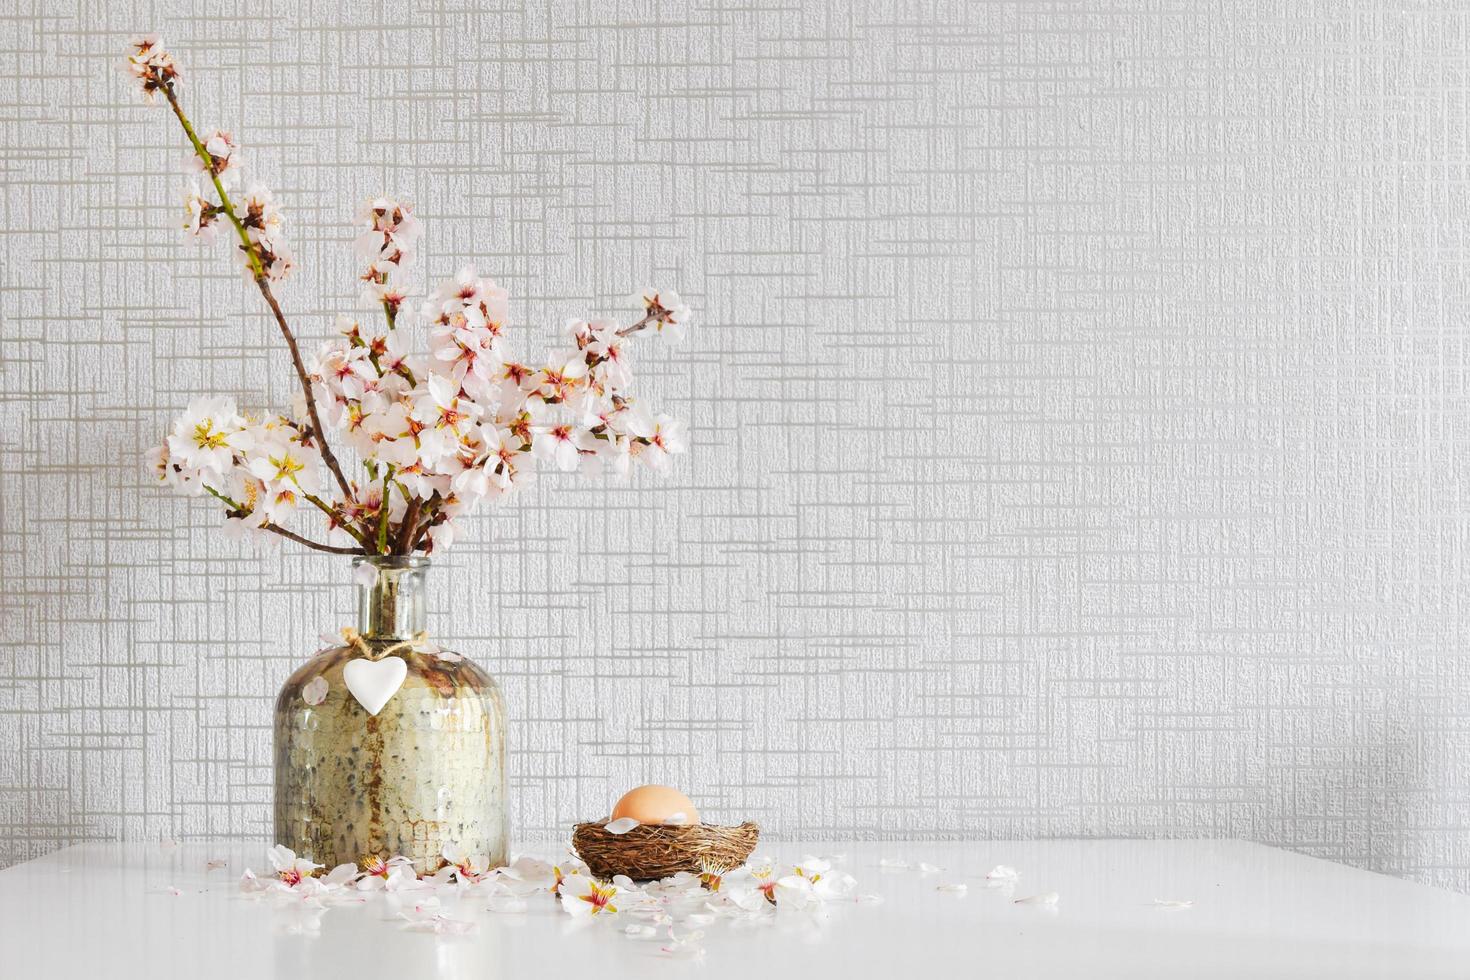 Vase avec des marguerites blanches colorées fraîches dans un vase, décoration d'oeufs de Pâques sur table blanche photo